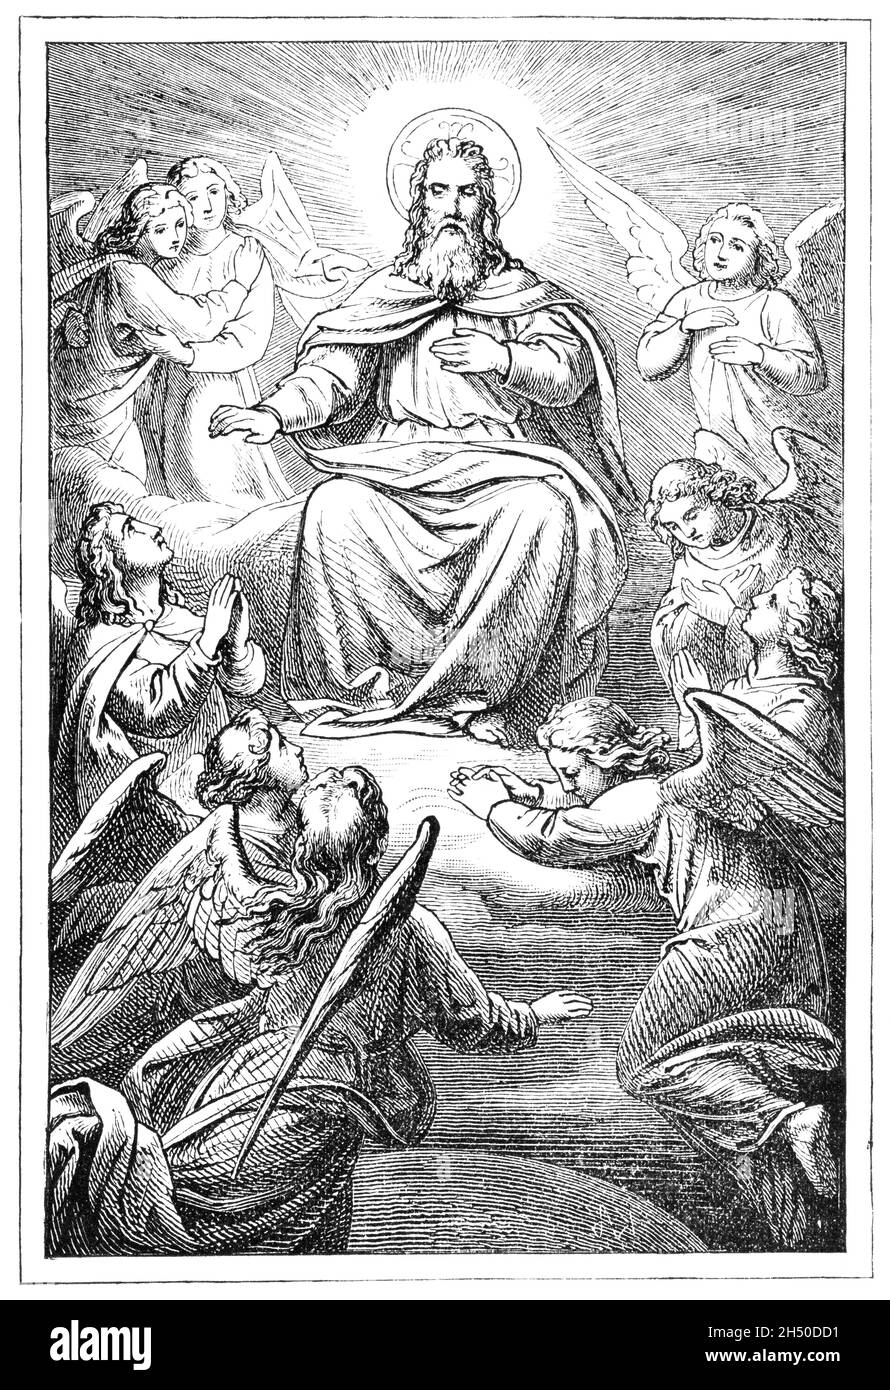 Dieu le Père assis sur le trône dans le ciel entouré d'anges ou de chérubins.Bible, ancien testament.Ancien dessin antique Banque D'Images